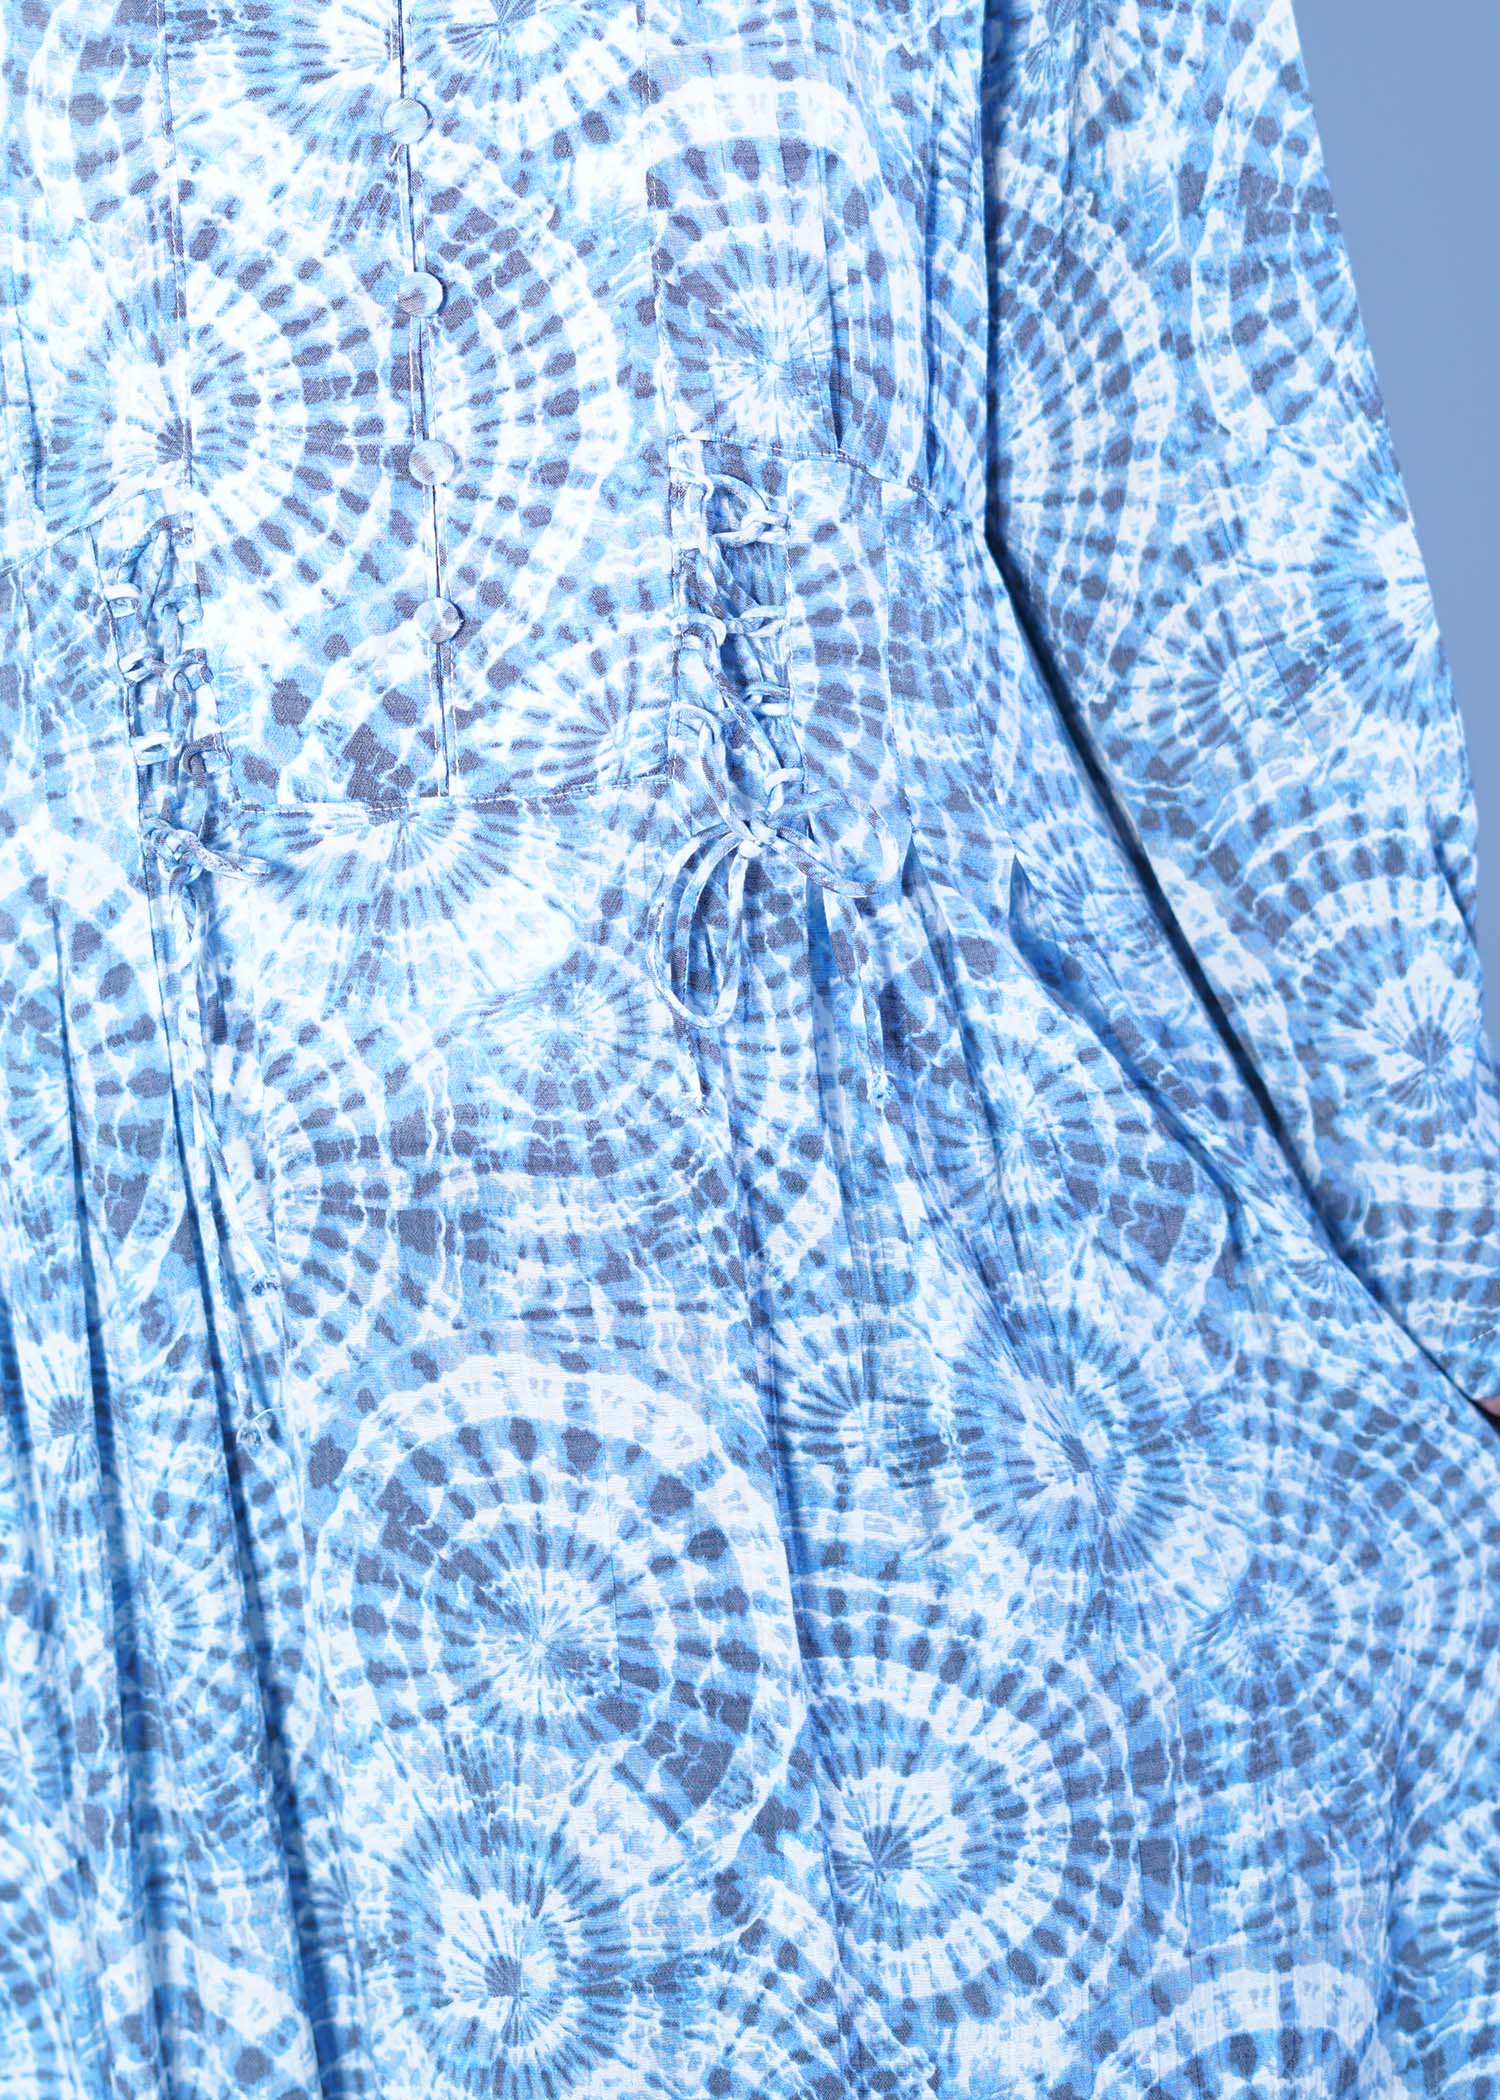 laurel ladies long dress blue tie dye color closeup view